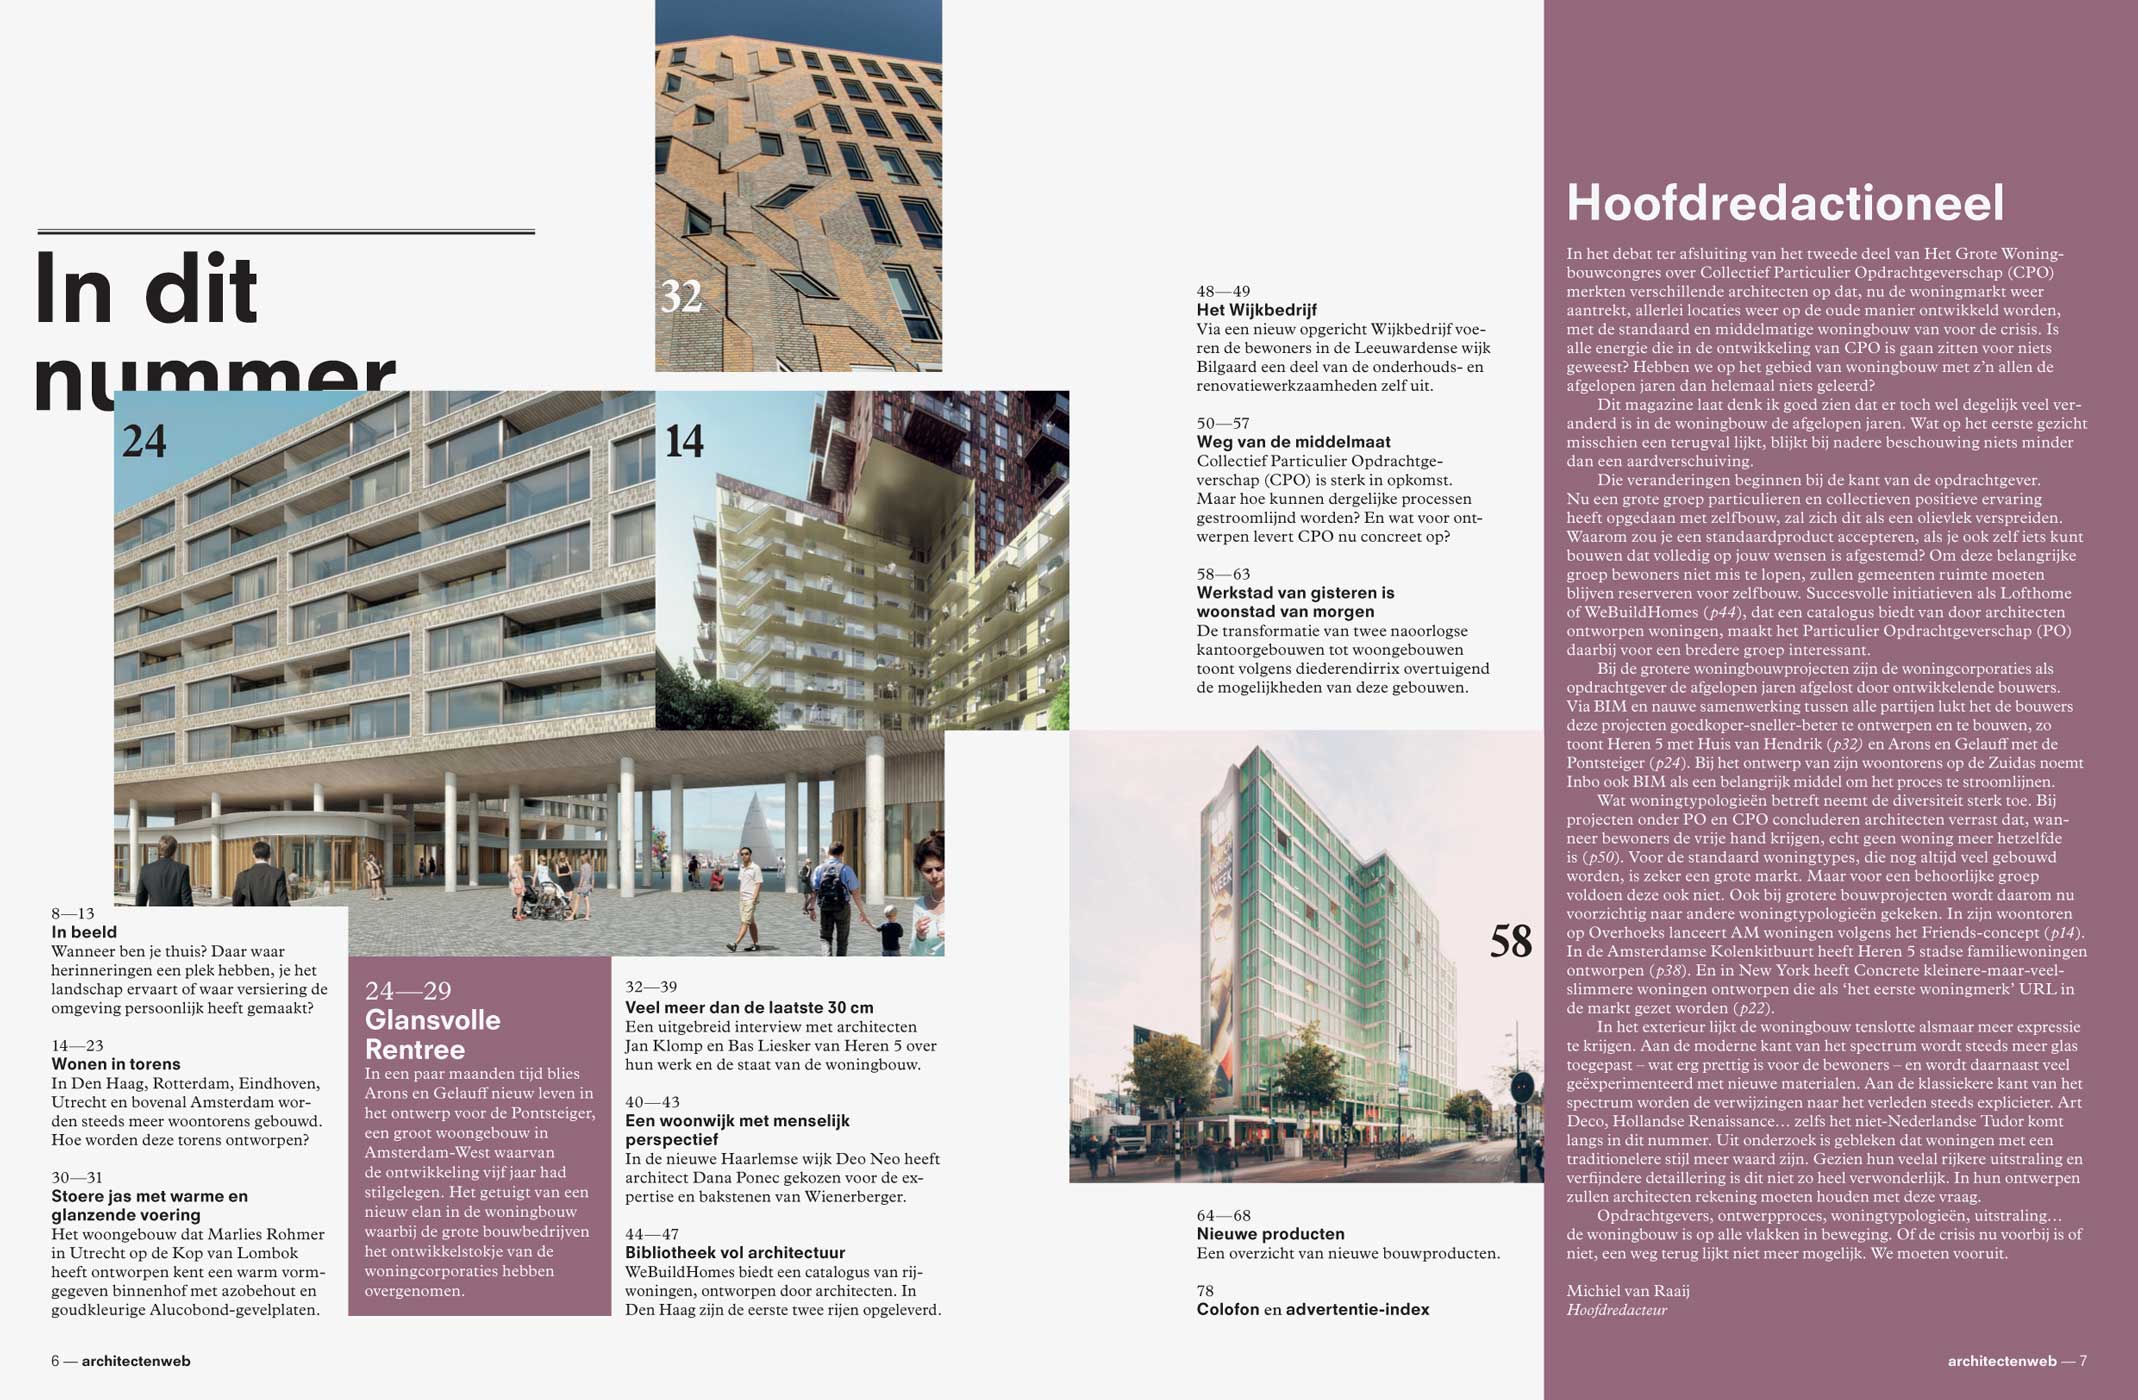 architectenweb, magazine, editorial design, architecture